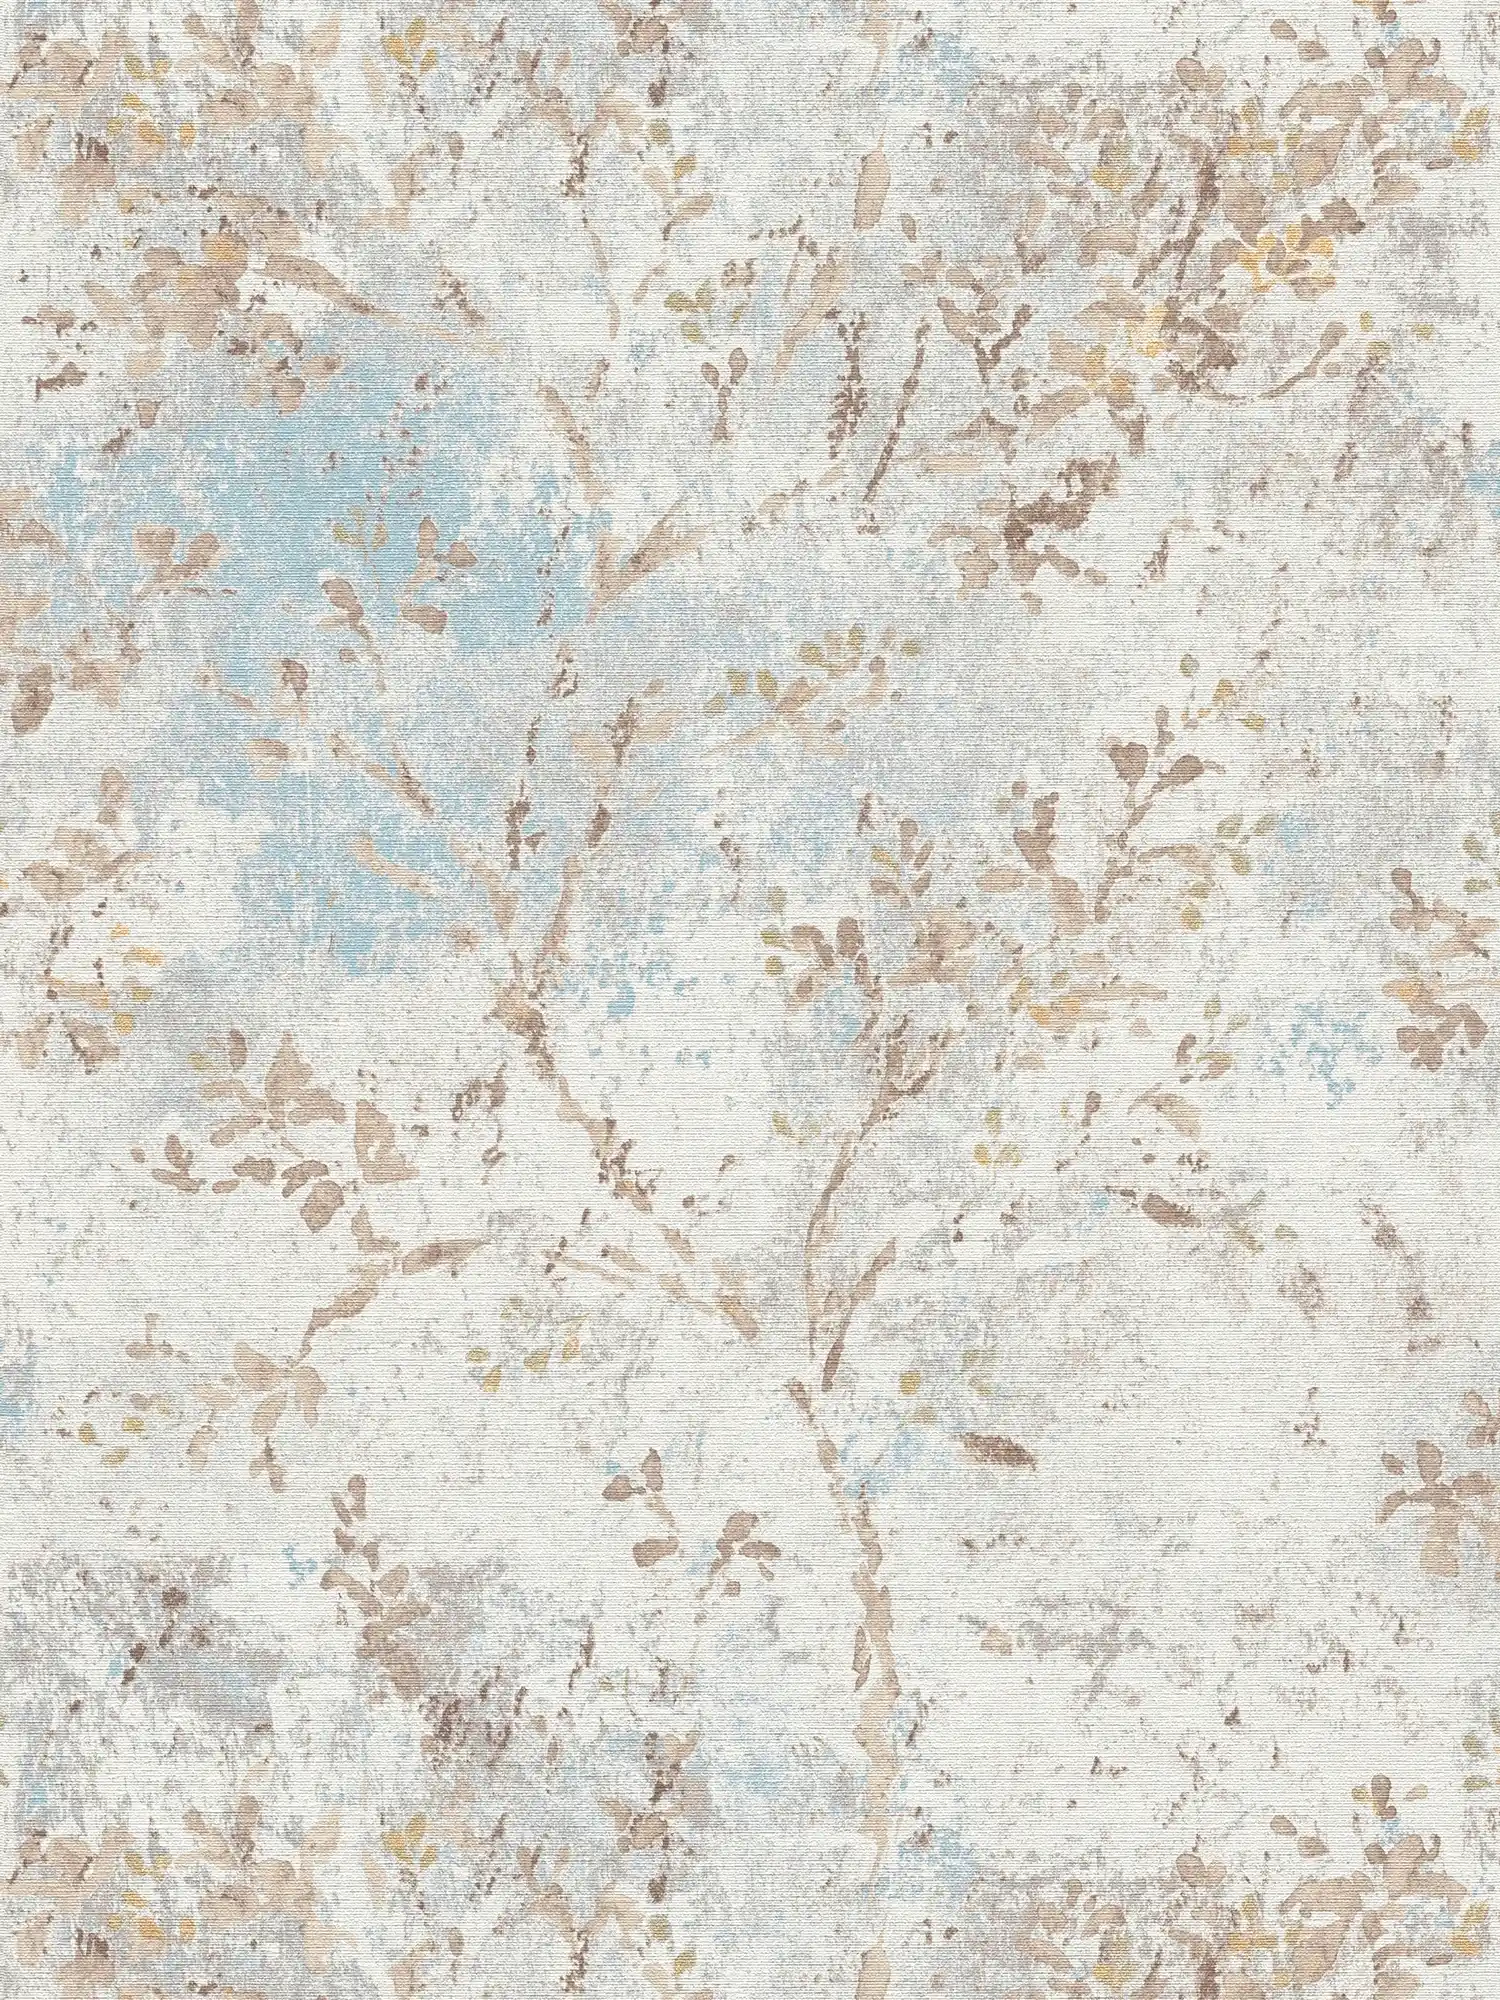 papier peint en papier intissé avec aspect floral aquarelle - bleu, beige, or
